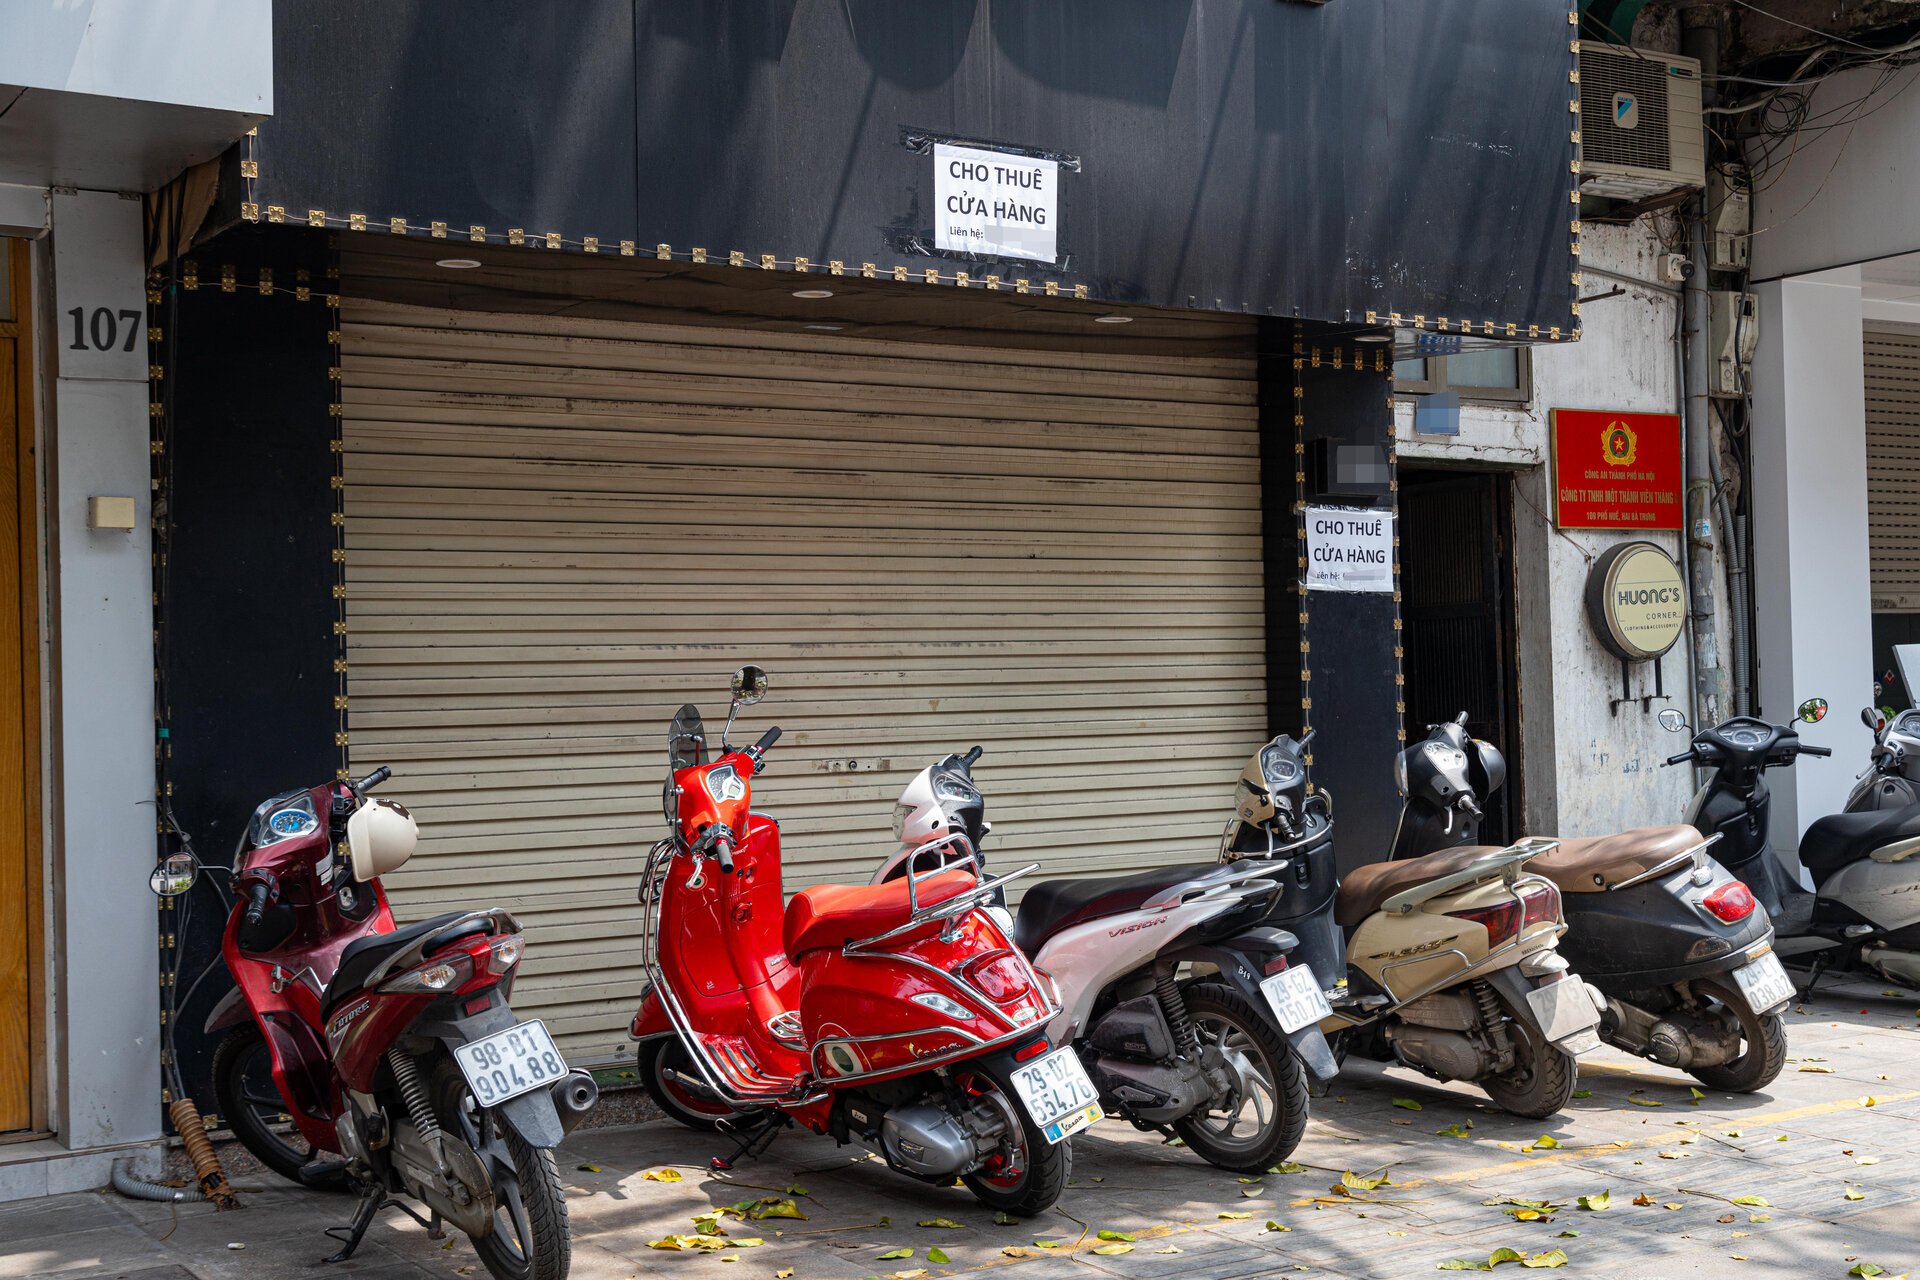 Hàng chục cửa hàng trên đất vàng phố Huế, Hà Nội đóng cửa, treo biển cho thuê - Ảnh 13.